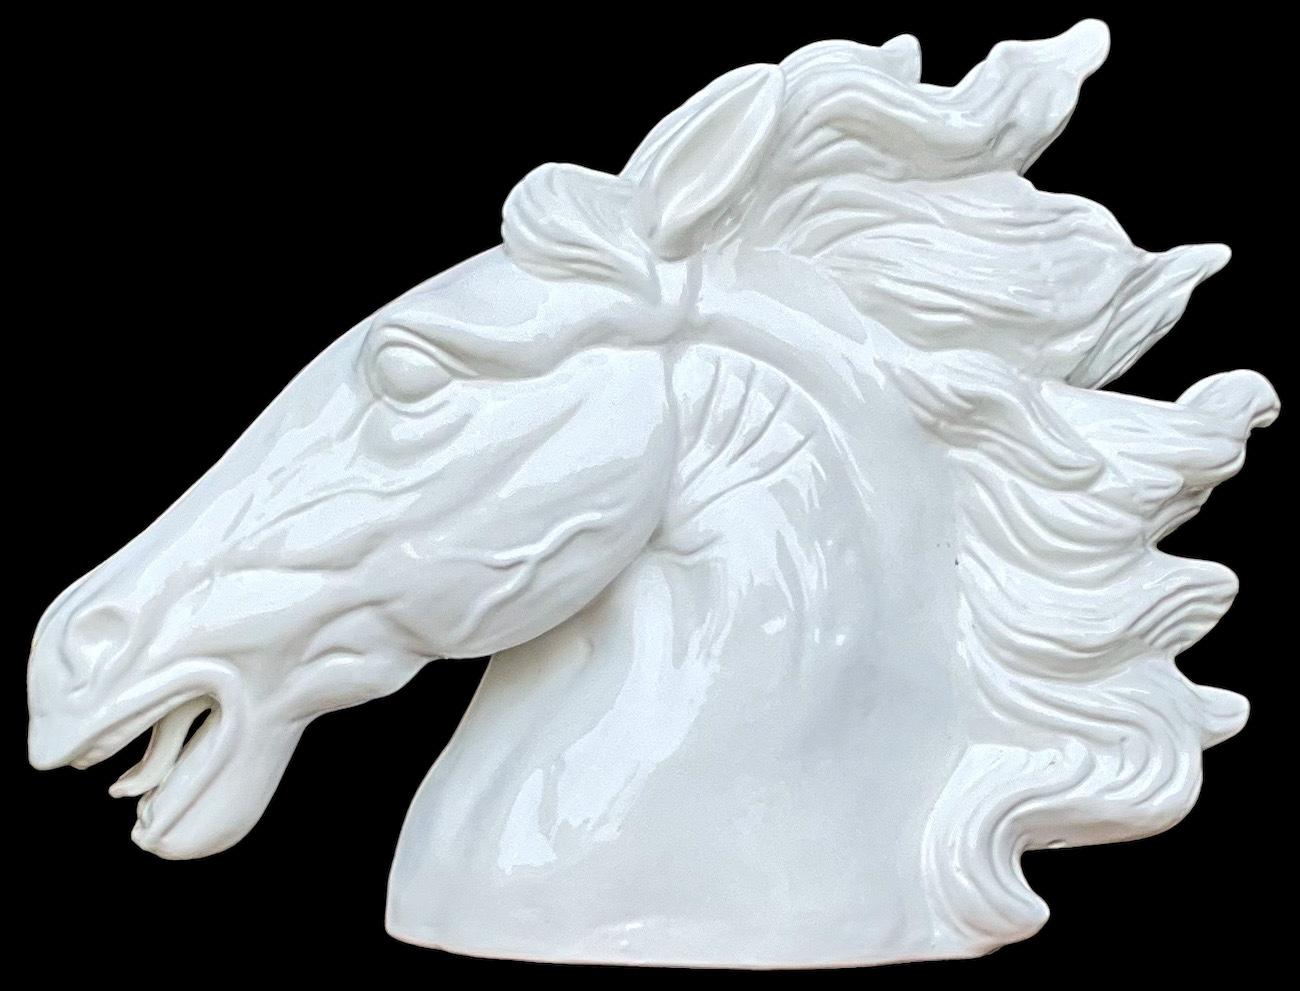 Dies ist ein großer Maßstab majestätischen weißen italienischen Pferd Kopf Büste. Es ist unbeschriftet und in sehr gutem Zustand. Sie stammt wahrscheinlich aus der zweiten Hälfte des 20. Jahrhunderts.